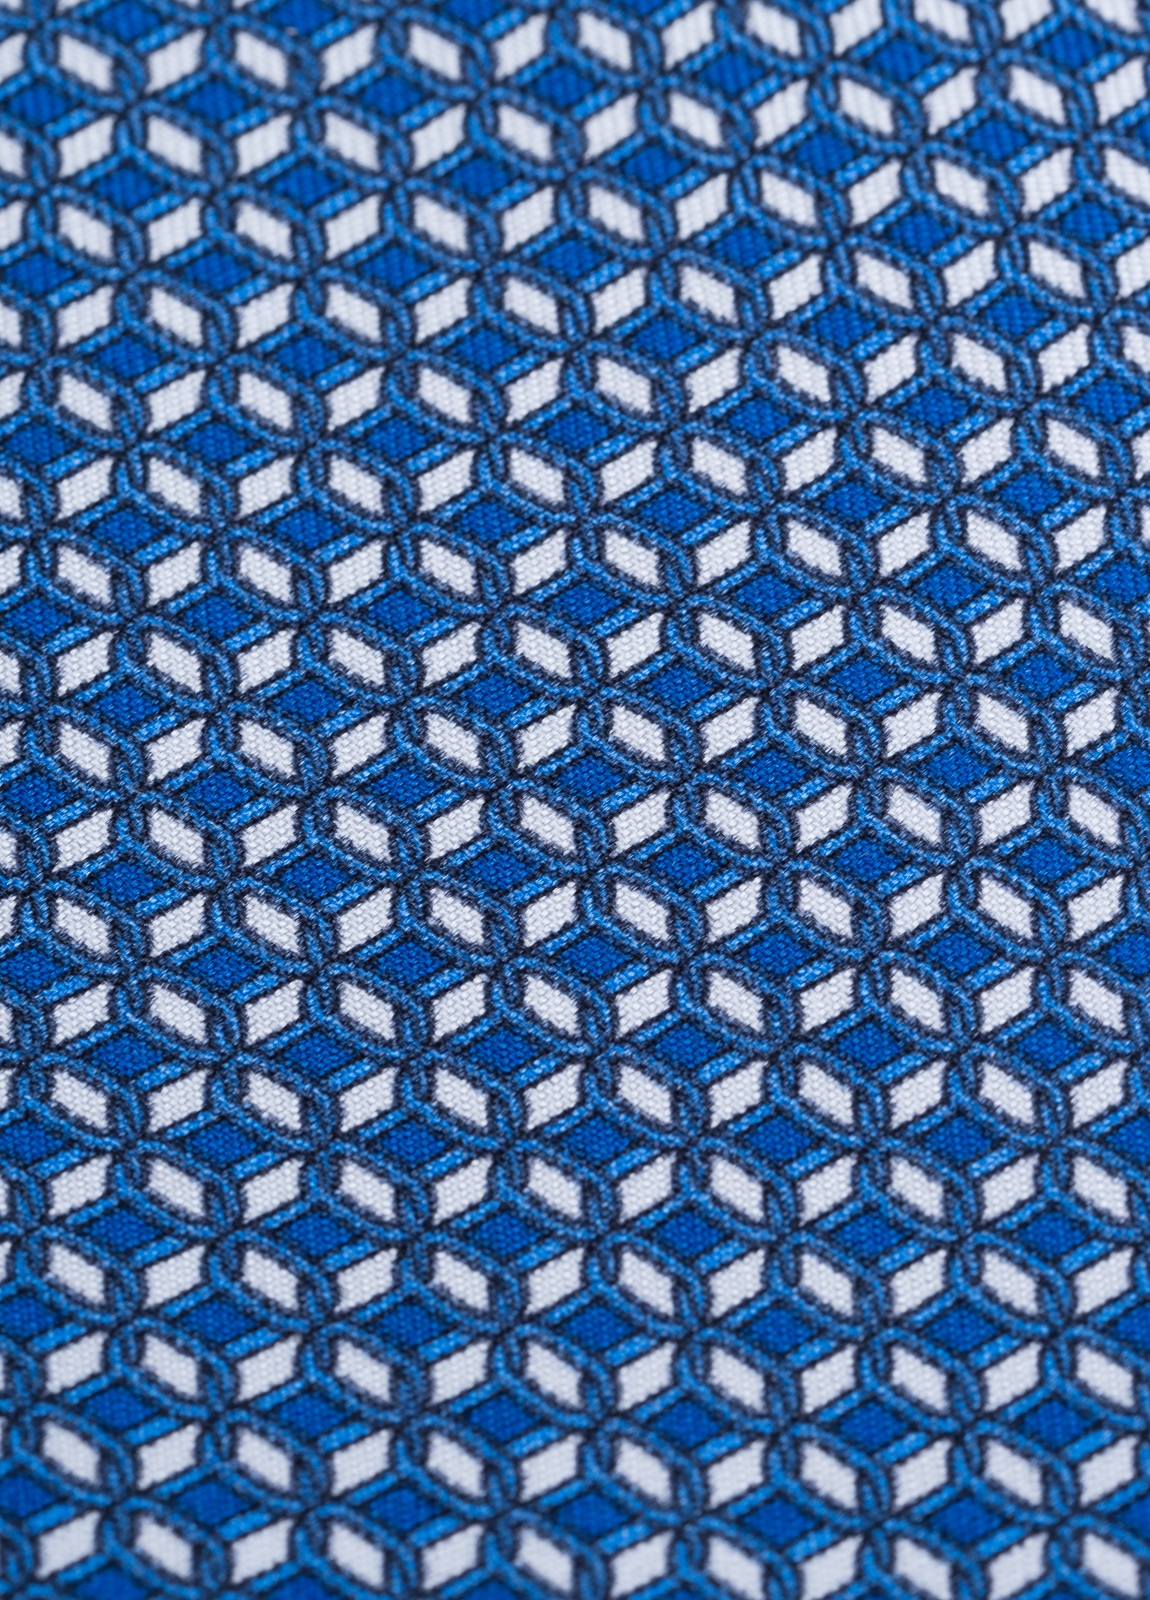 Corbata FUREST COLECCIÓN color azul con dibujo geométrico blanco - Ítem2